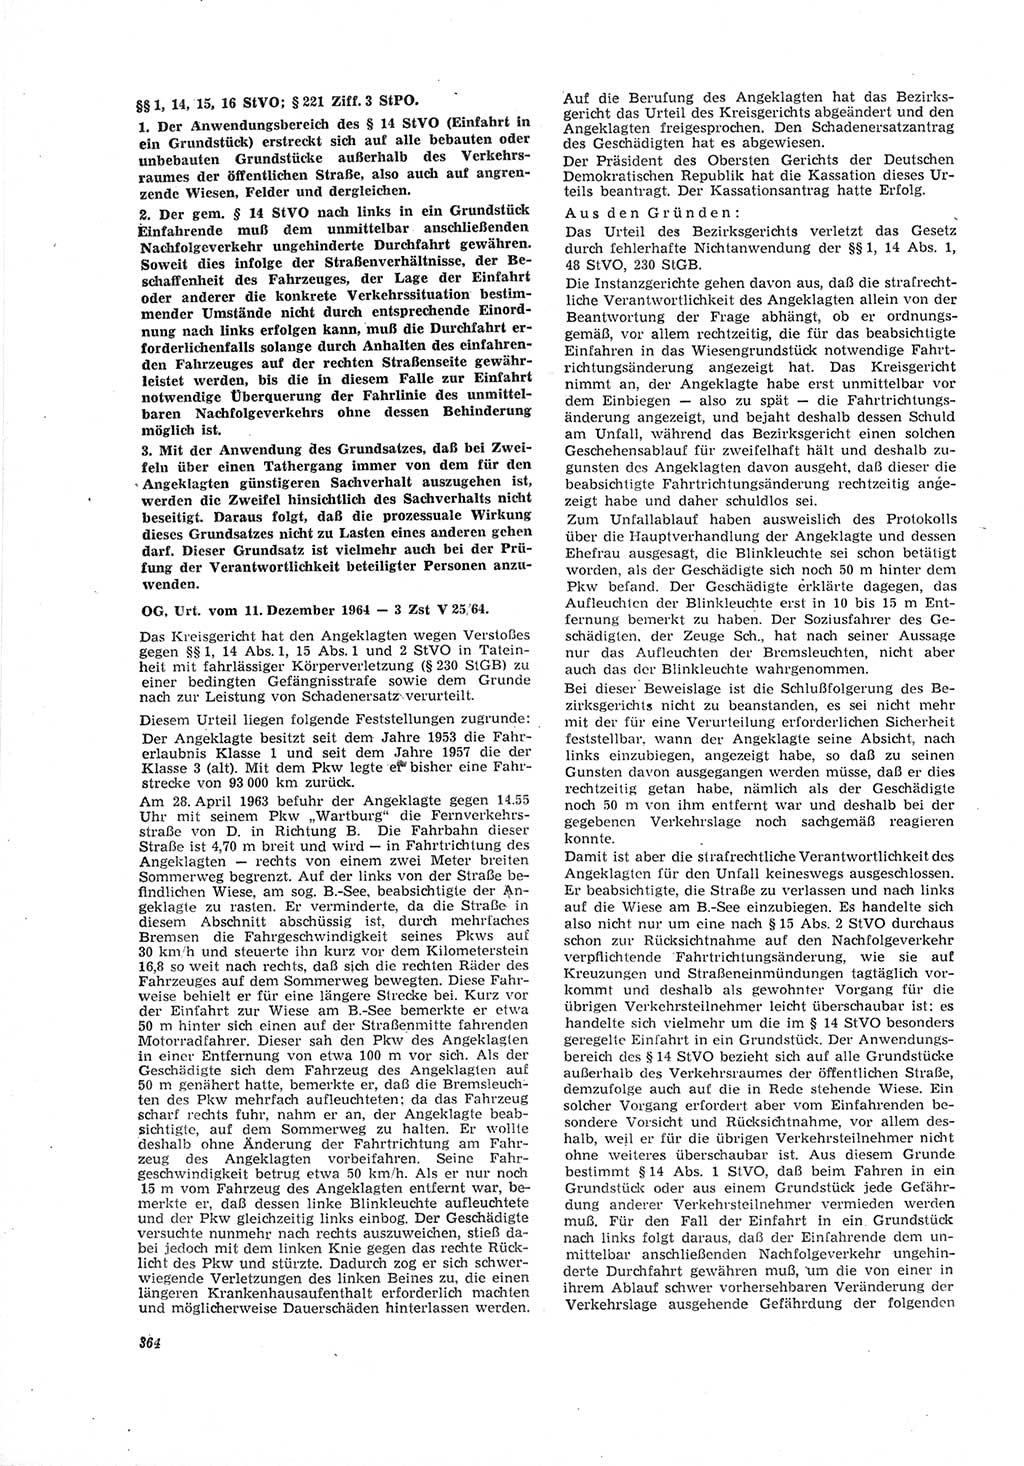 Neue Justiz (NJ), Zeitschrift für Recht und Rechtswissenschaft [Deutsche Demokratische Republik (DDR)], 19. Jahrgang 1965, Seite 364 (NJ DDR 1965, S. 364)